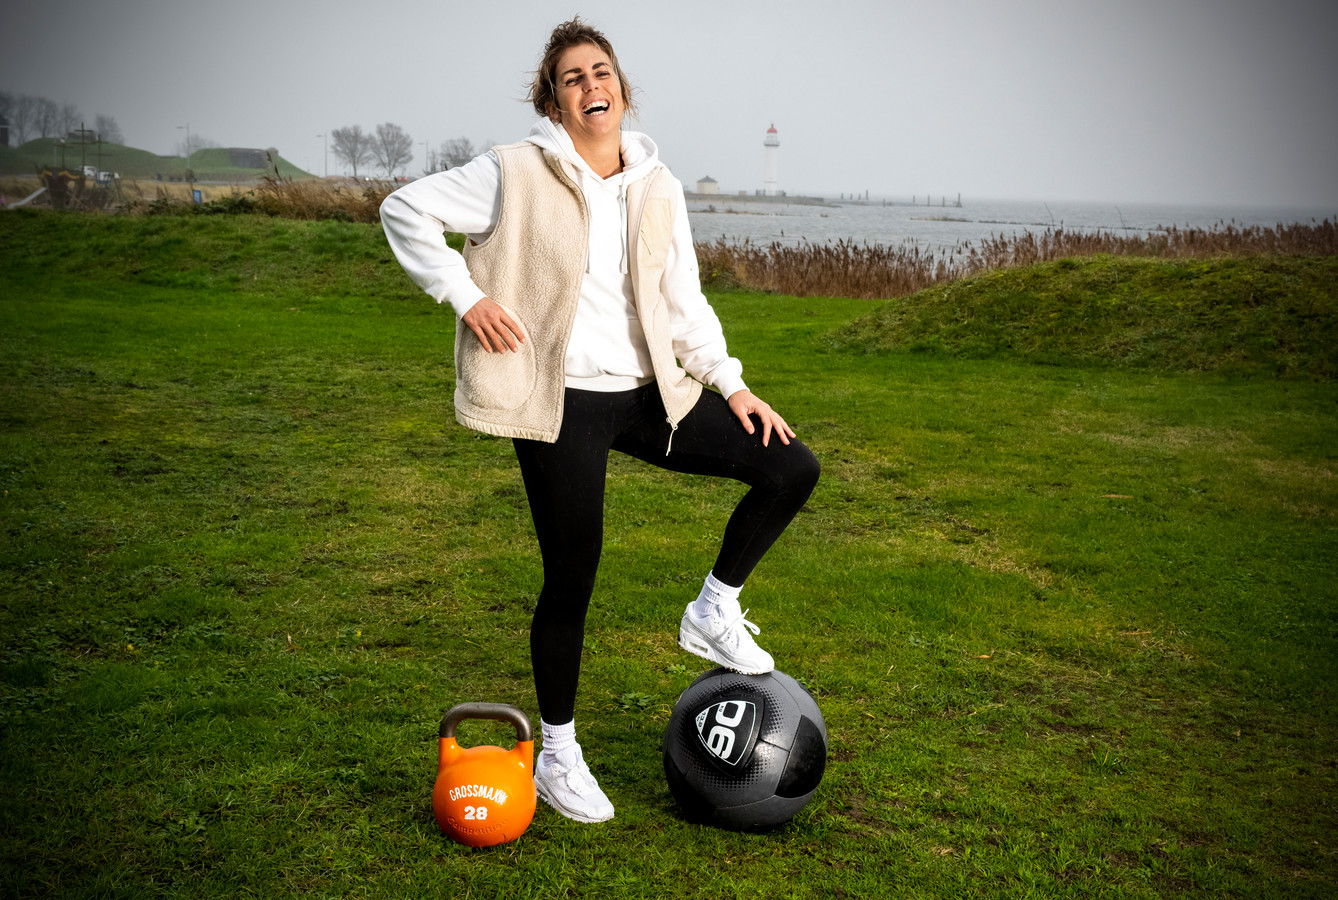 Robijn Punt Rook Sporten, gezond eten? Esther weet raad: 'Je lijf is je kostbaarste bezit,  daar moet je voor willen zorgen' | Foto | gelderlander.nl